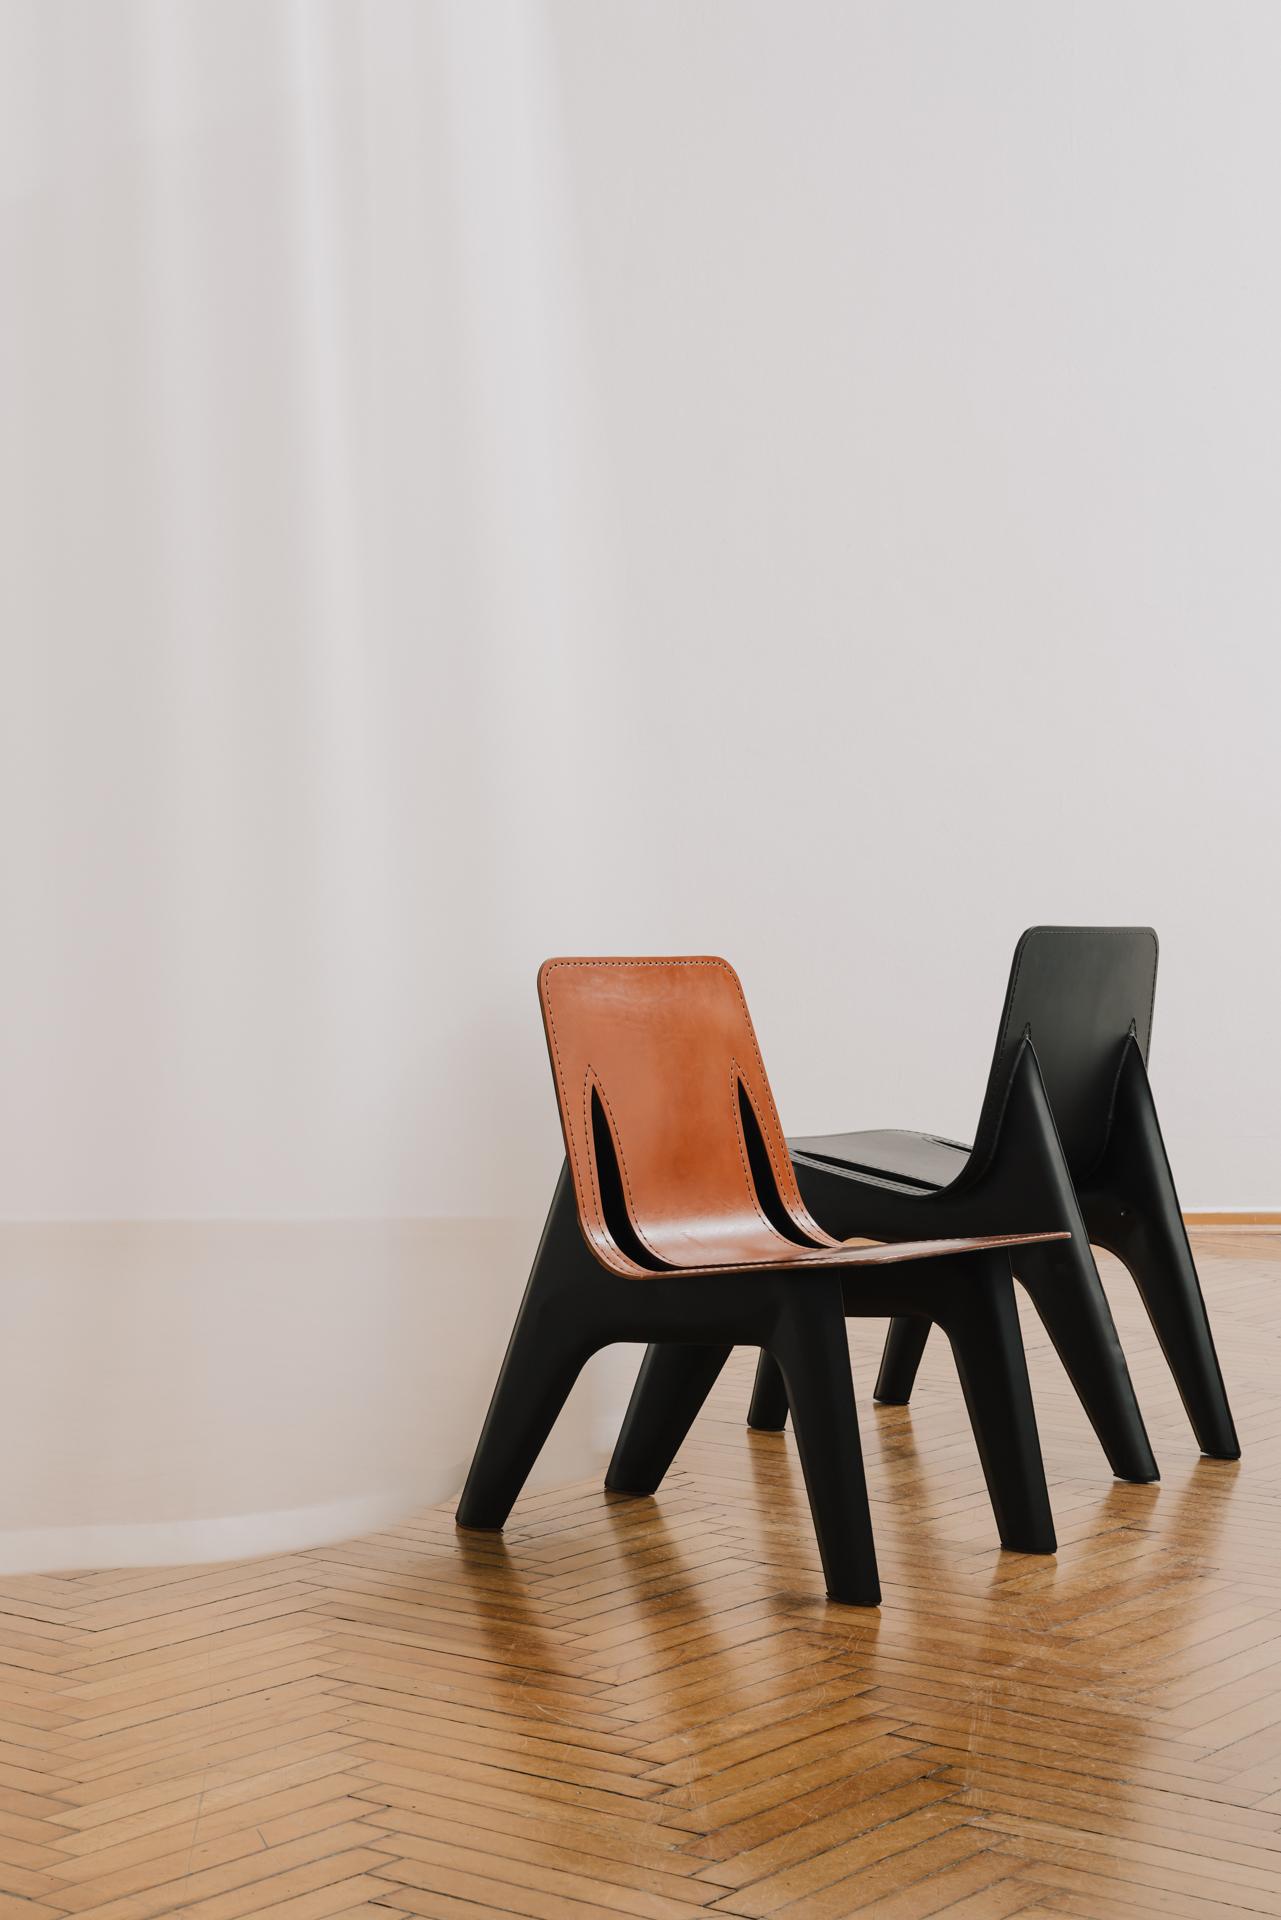 Loungesessel 'J-Chair' von Zieta

Graphitgrau Matt 7021 Aluminium

Abmessungen
Höhe: 76 cm
Breite: 53 cm
Tiefe: 74 cm
Gewicht: 5 kg

Ein aussagekräftiges FiDU-Manifest. Ein visuell starkes Objekt mit ikonischem Charakter, das auf einer leichten,